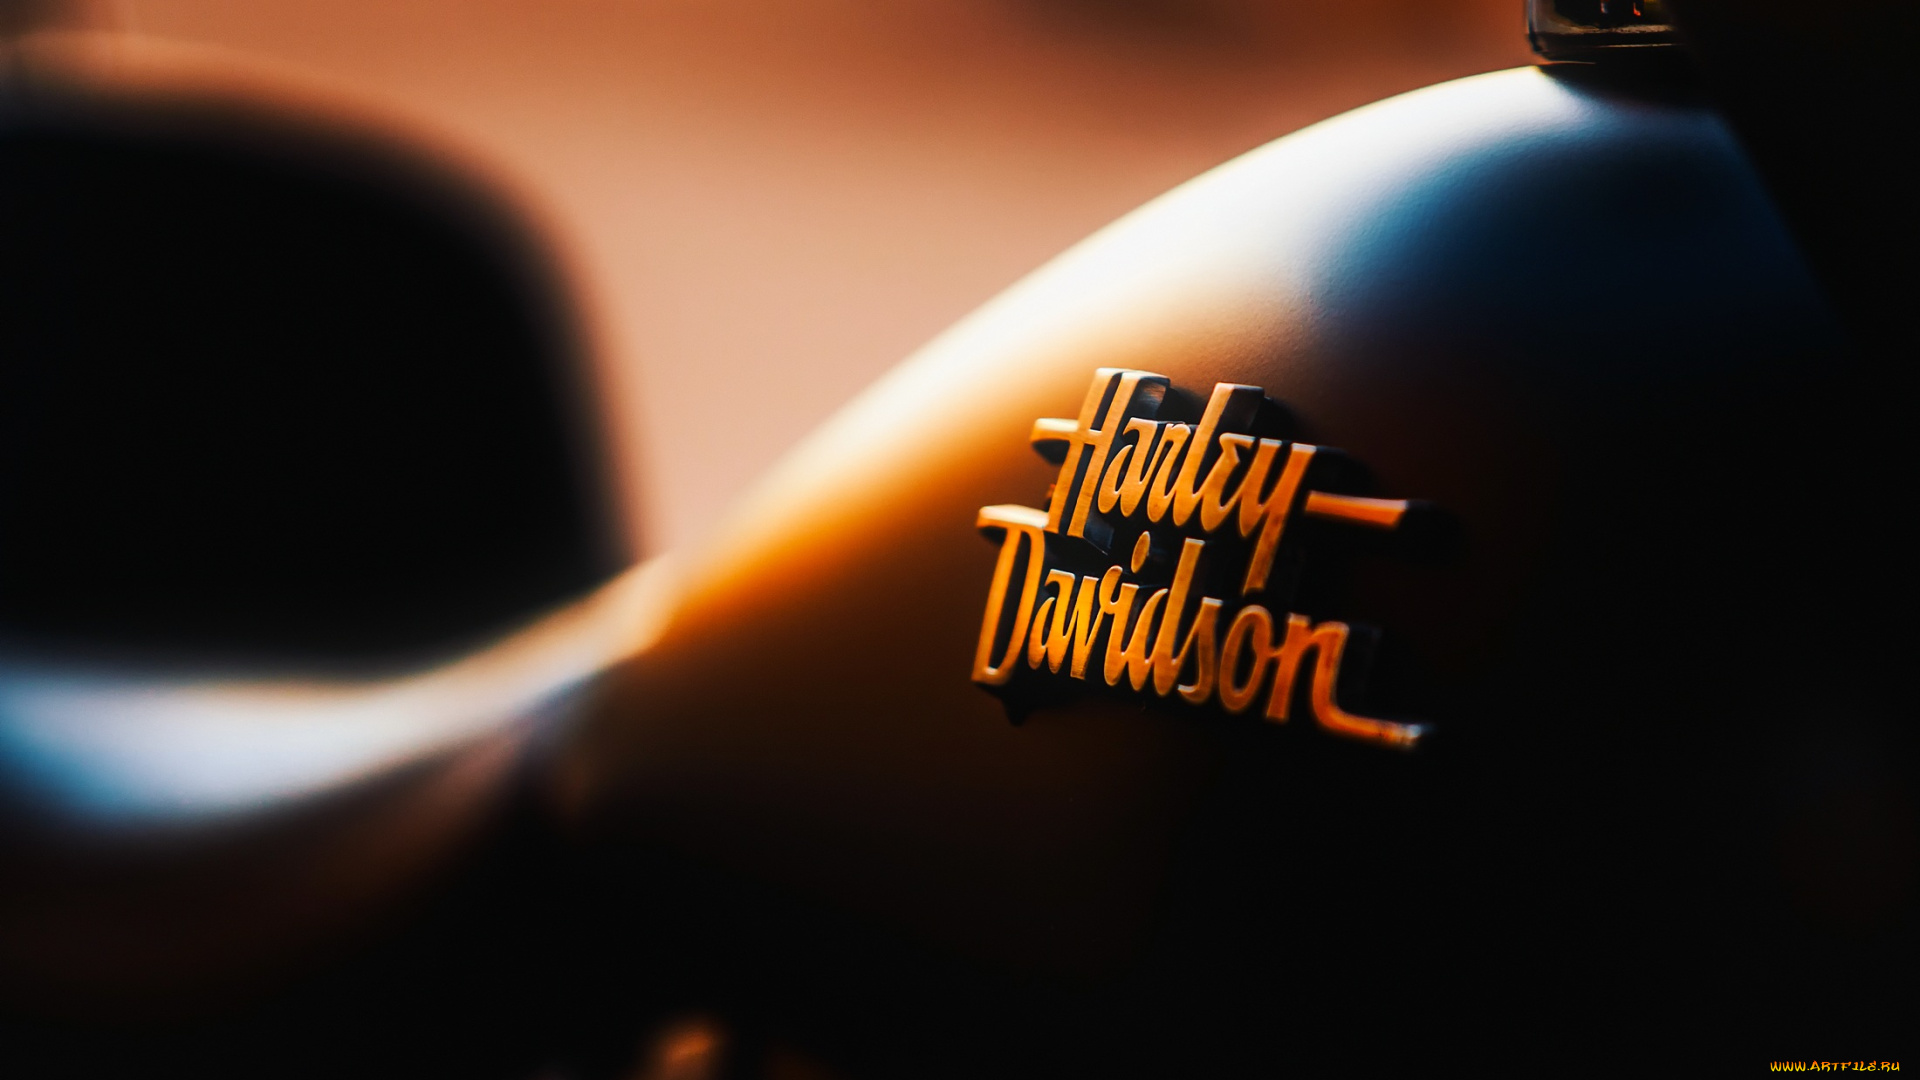 harley, davidson, бренды, авто-мото, , harley-davidson, harley, davidson, logo, bike, чоппер, логотип, харлей, дэвидсон